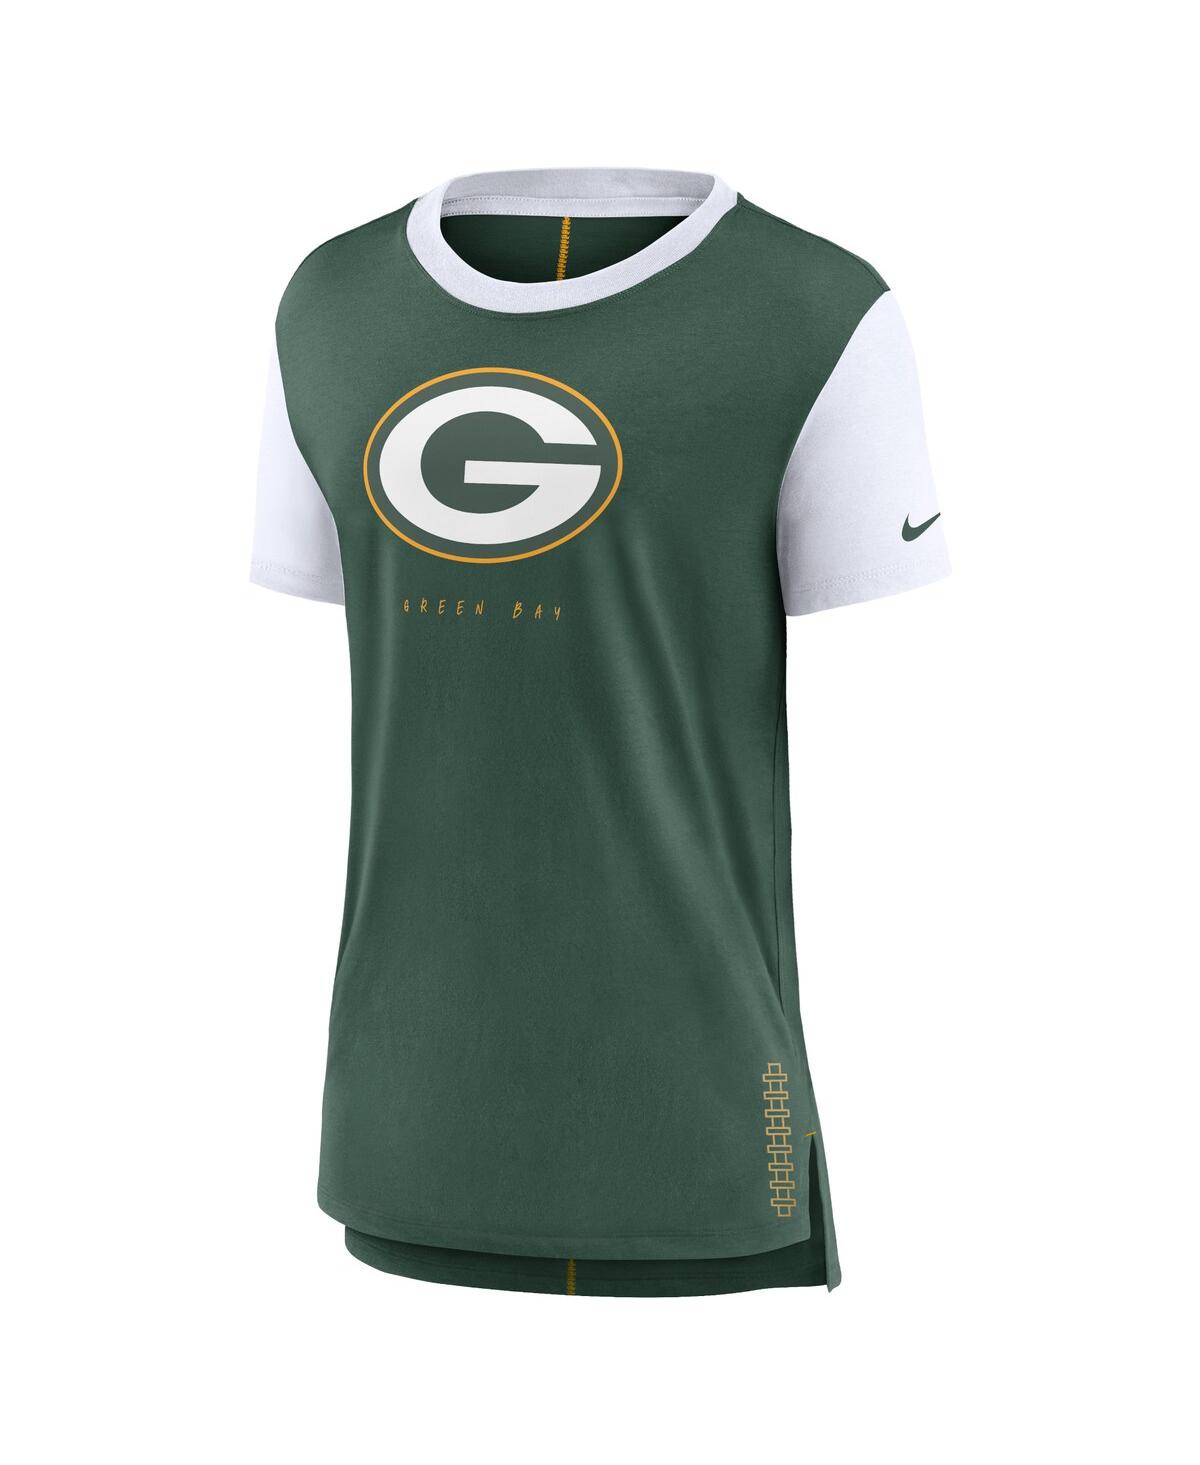 Shop Nike Women's  Green Green Bay Packers Team T-shirt